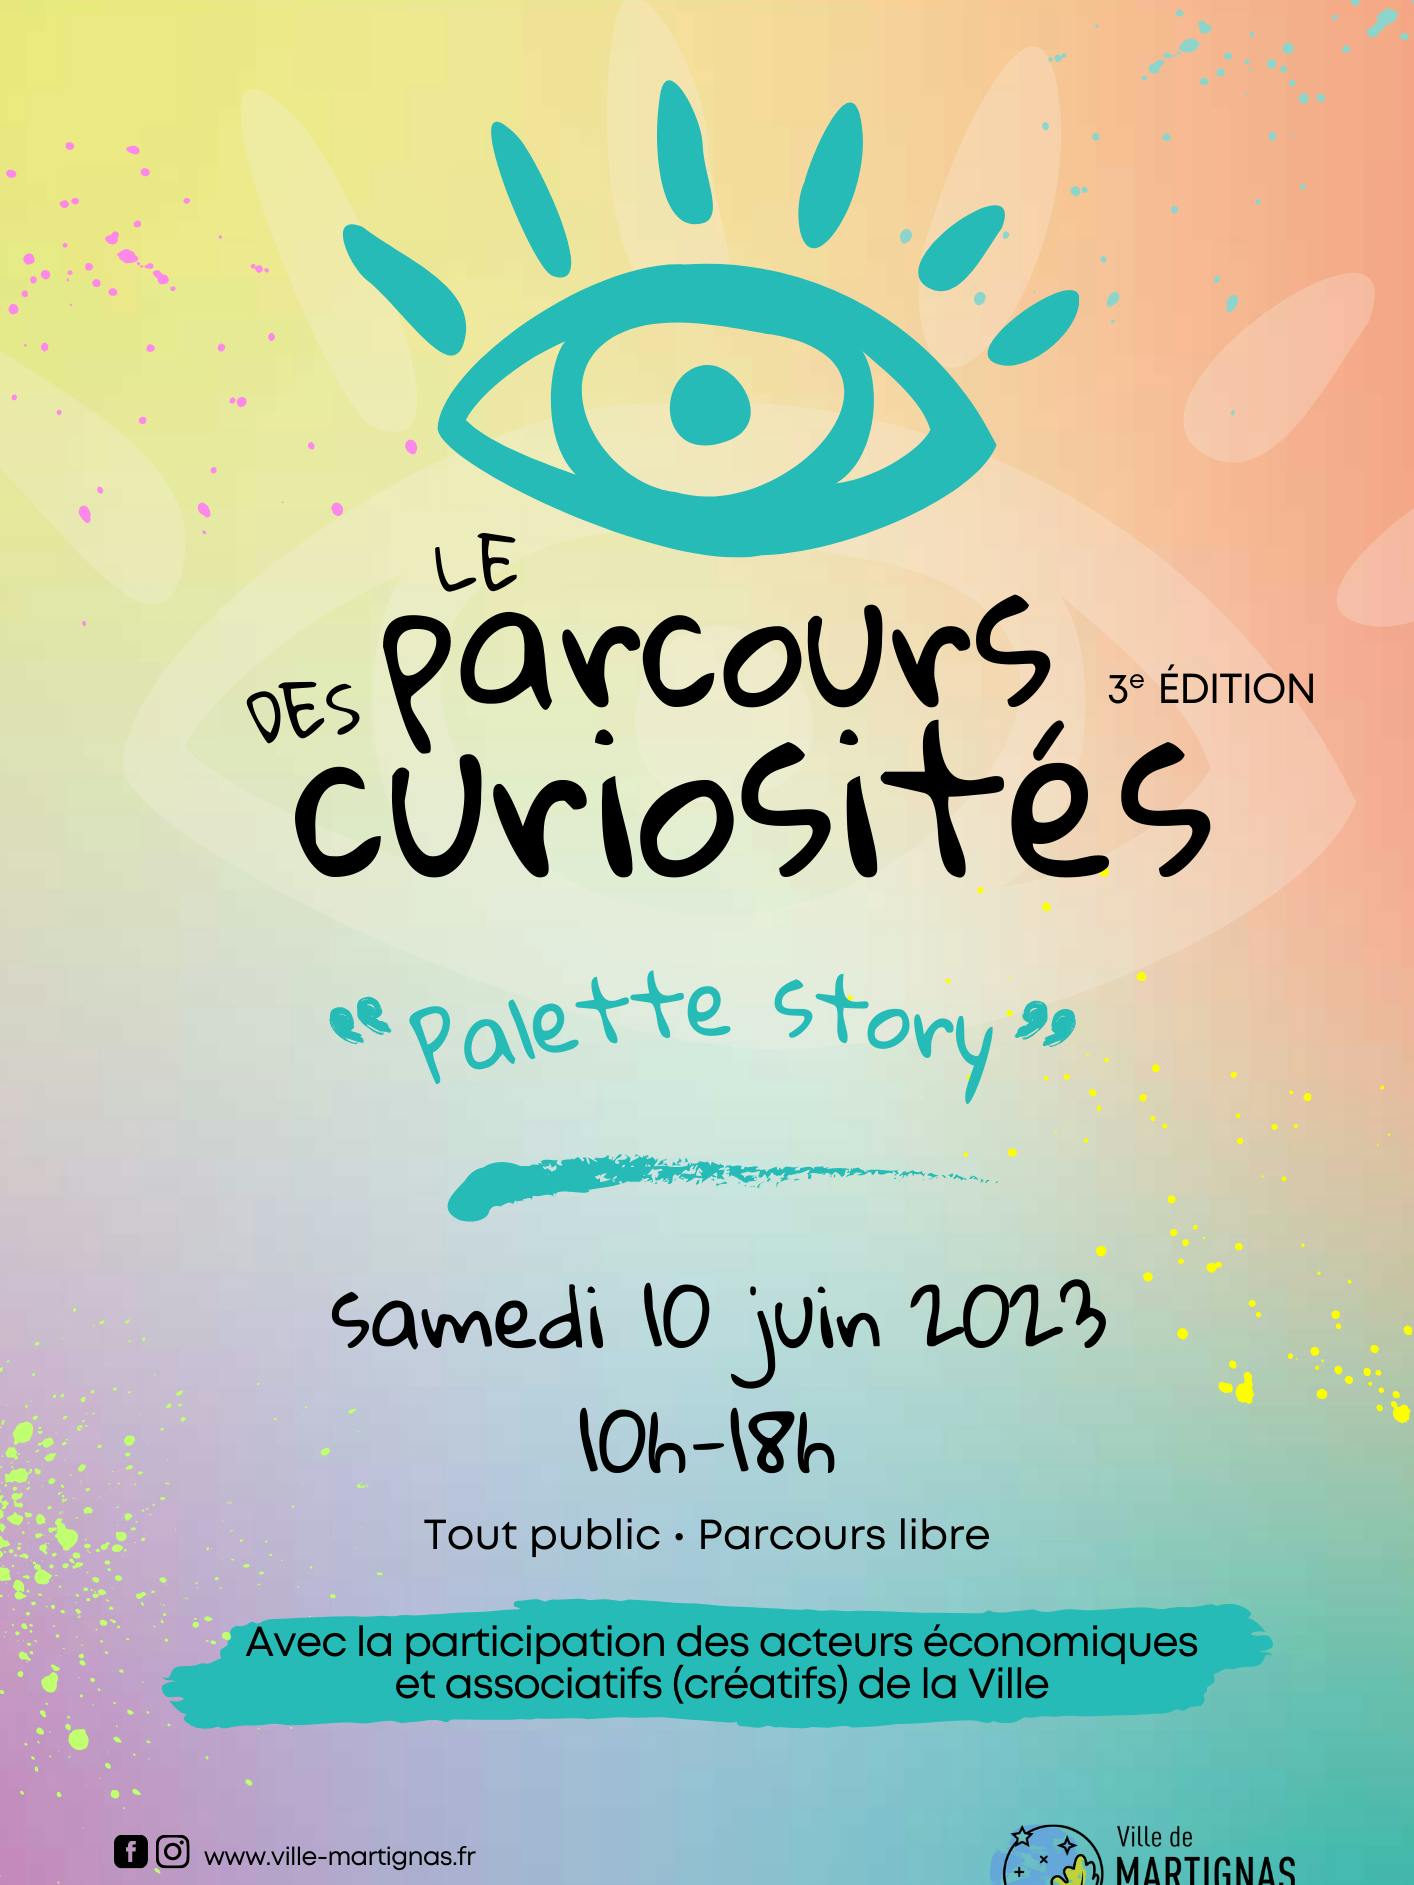 Parcours des curiosités "Palette Story" 3e édition